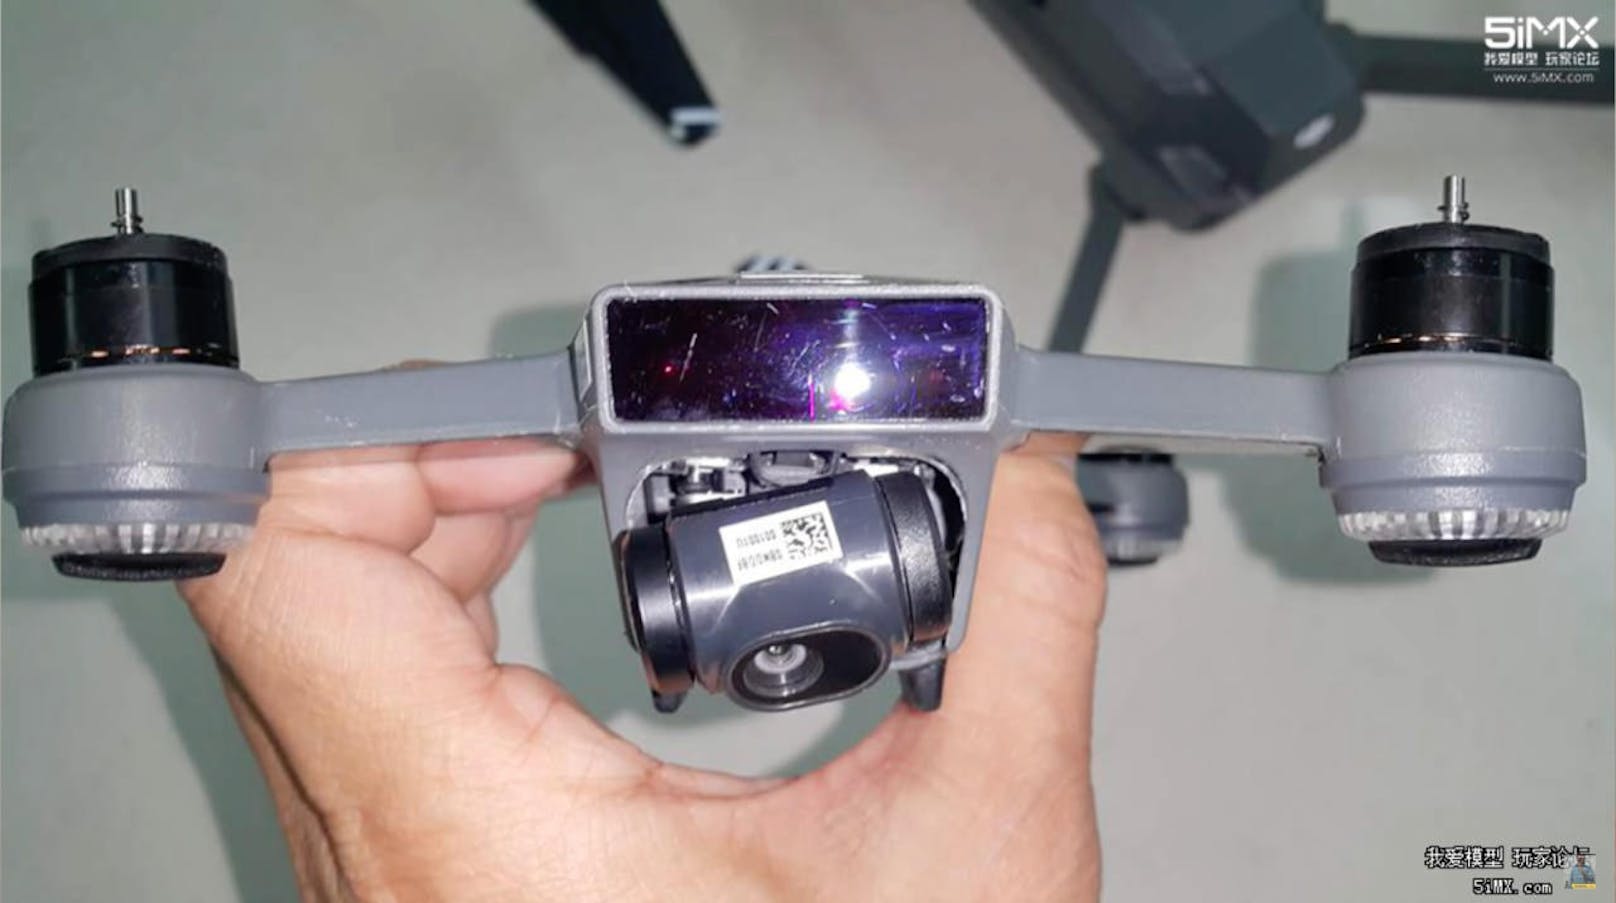 Der Mini-Qadrocopter verfügt über eine echte Aufhängung ("Gimbal"), die die Kamera während des Fluges stabilisiert.